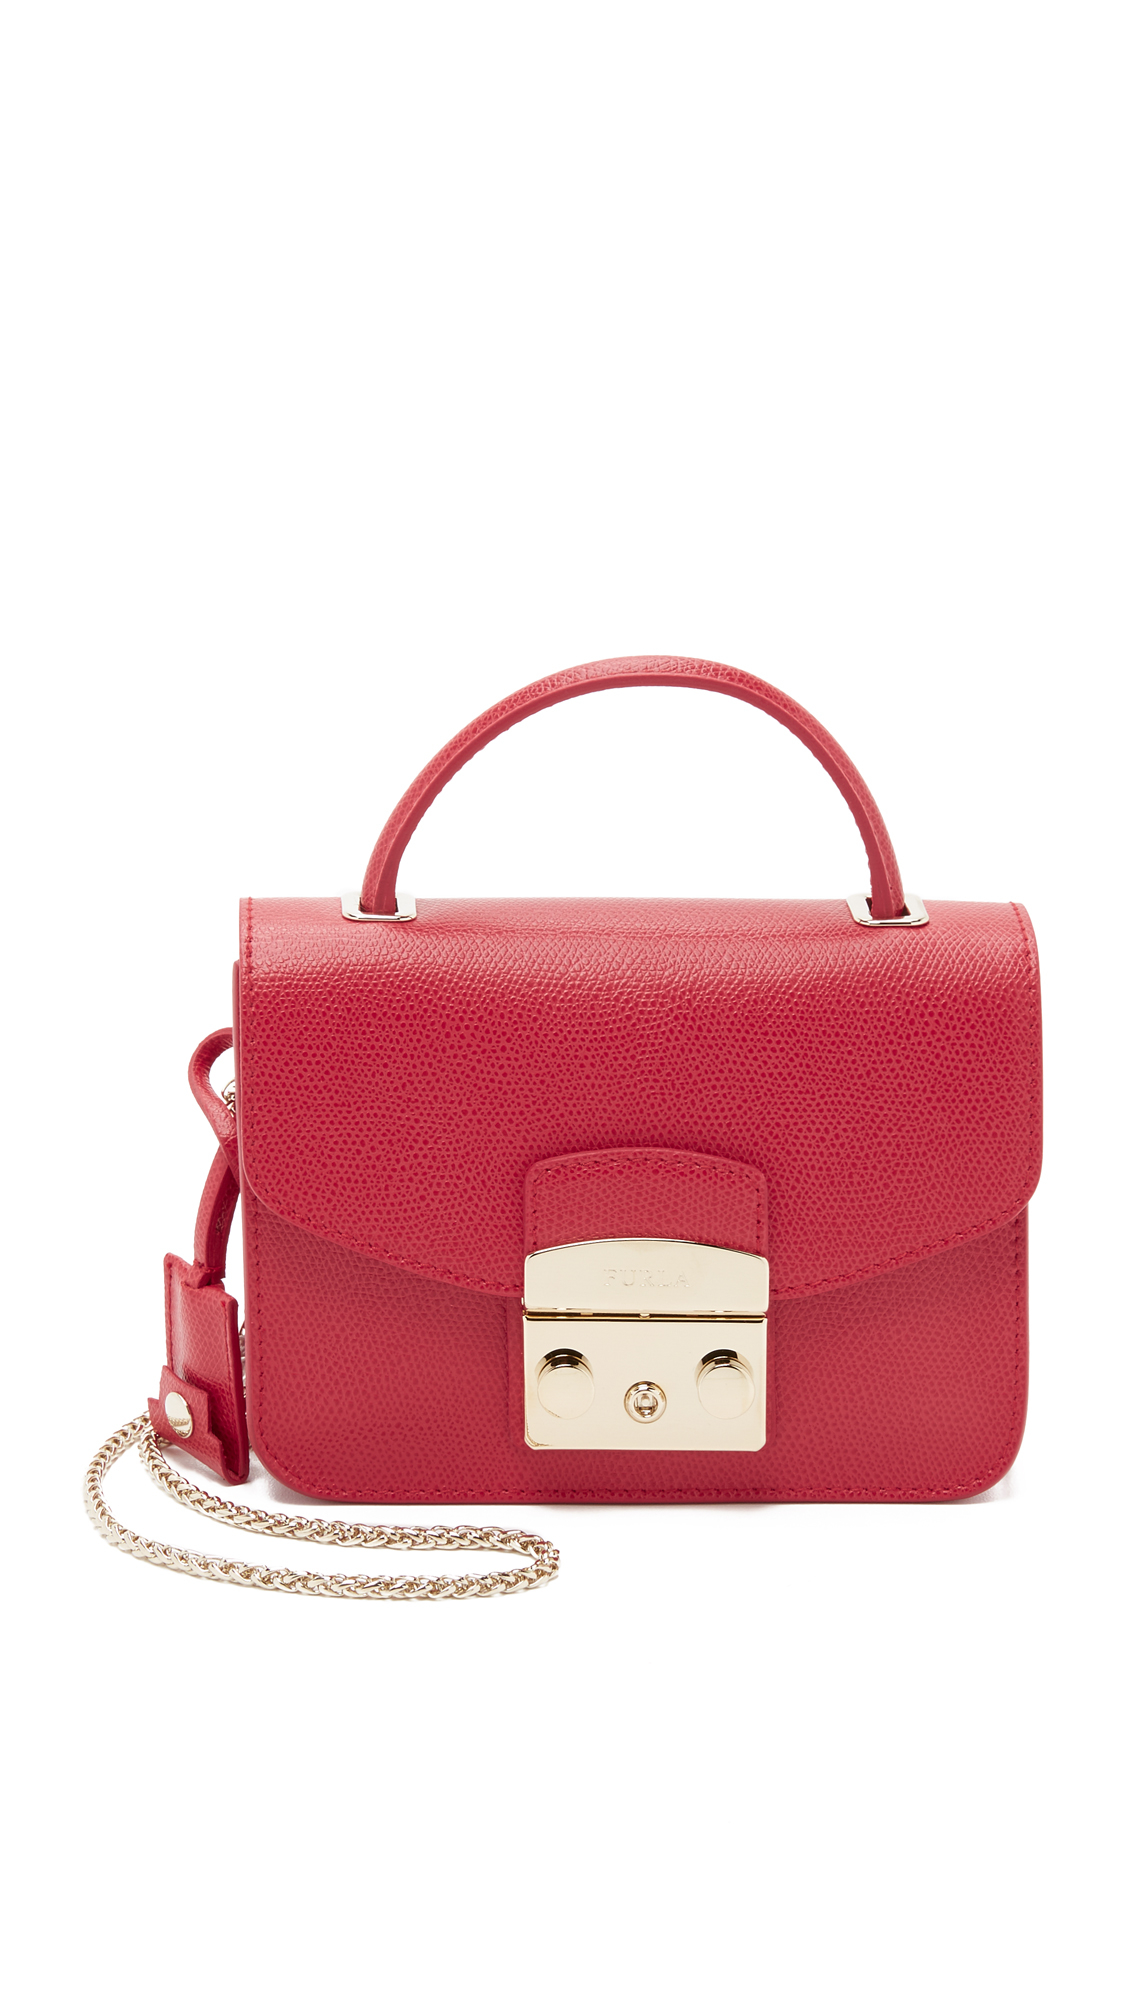 Furla Metropolis Top Handle Mini Cross Body Bag - Ruby in Red | Lyst